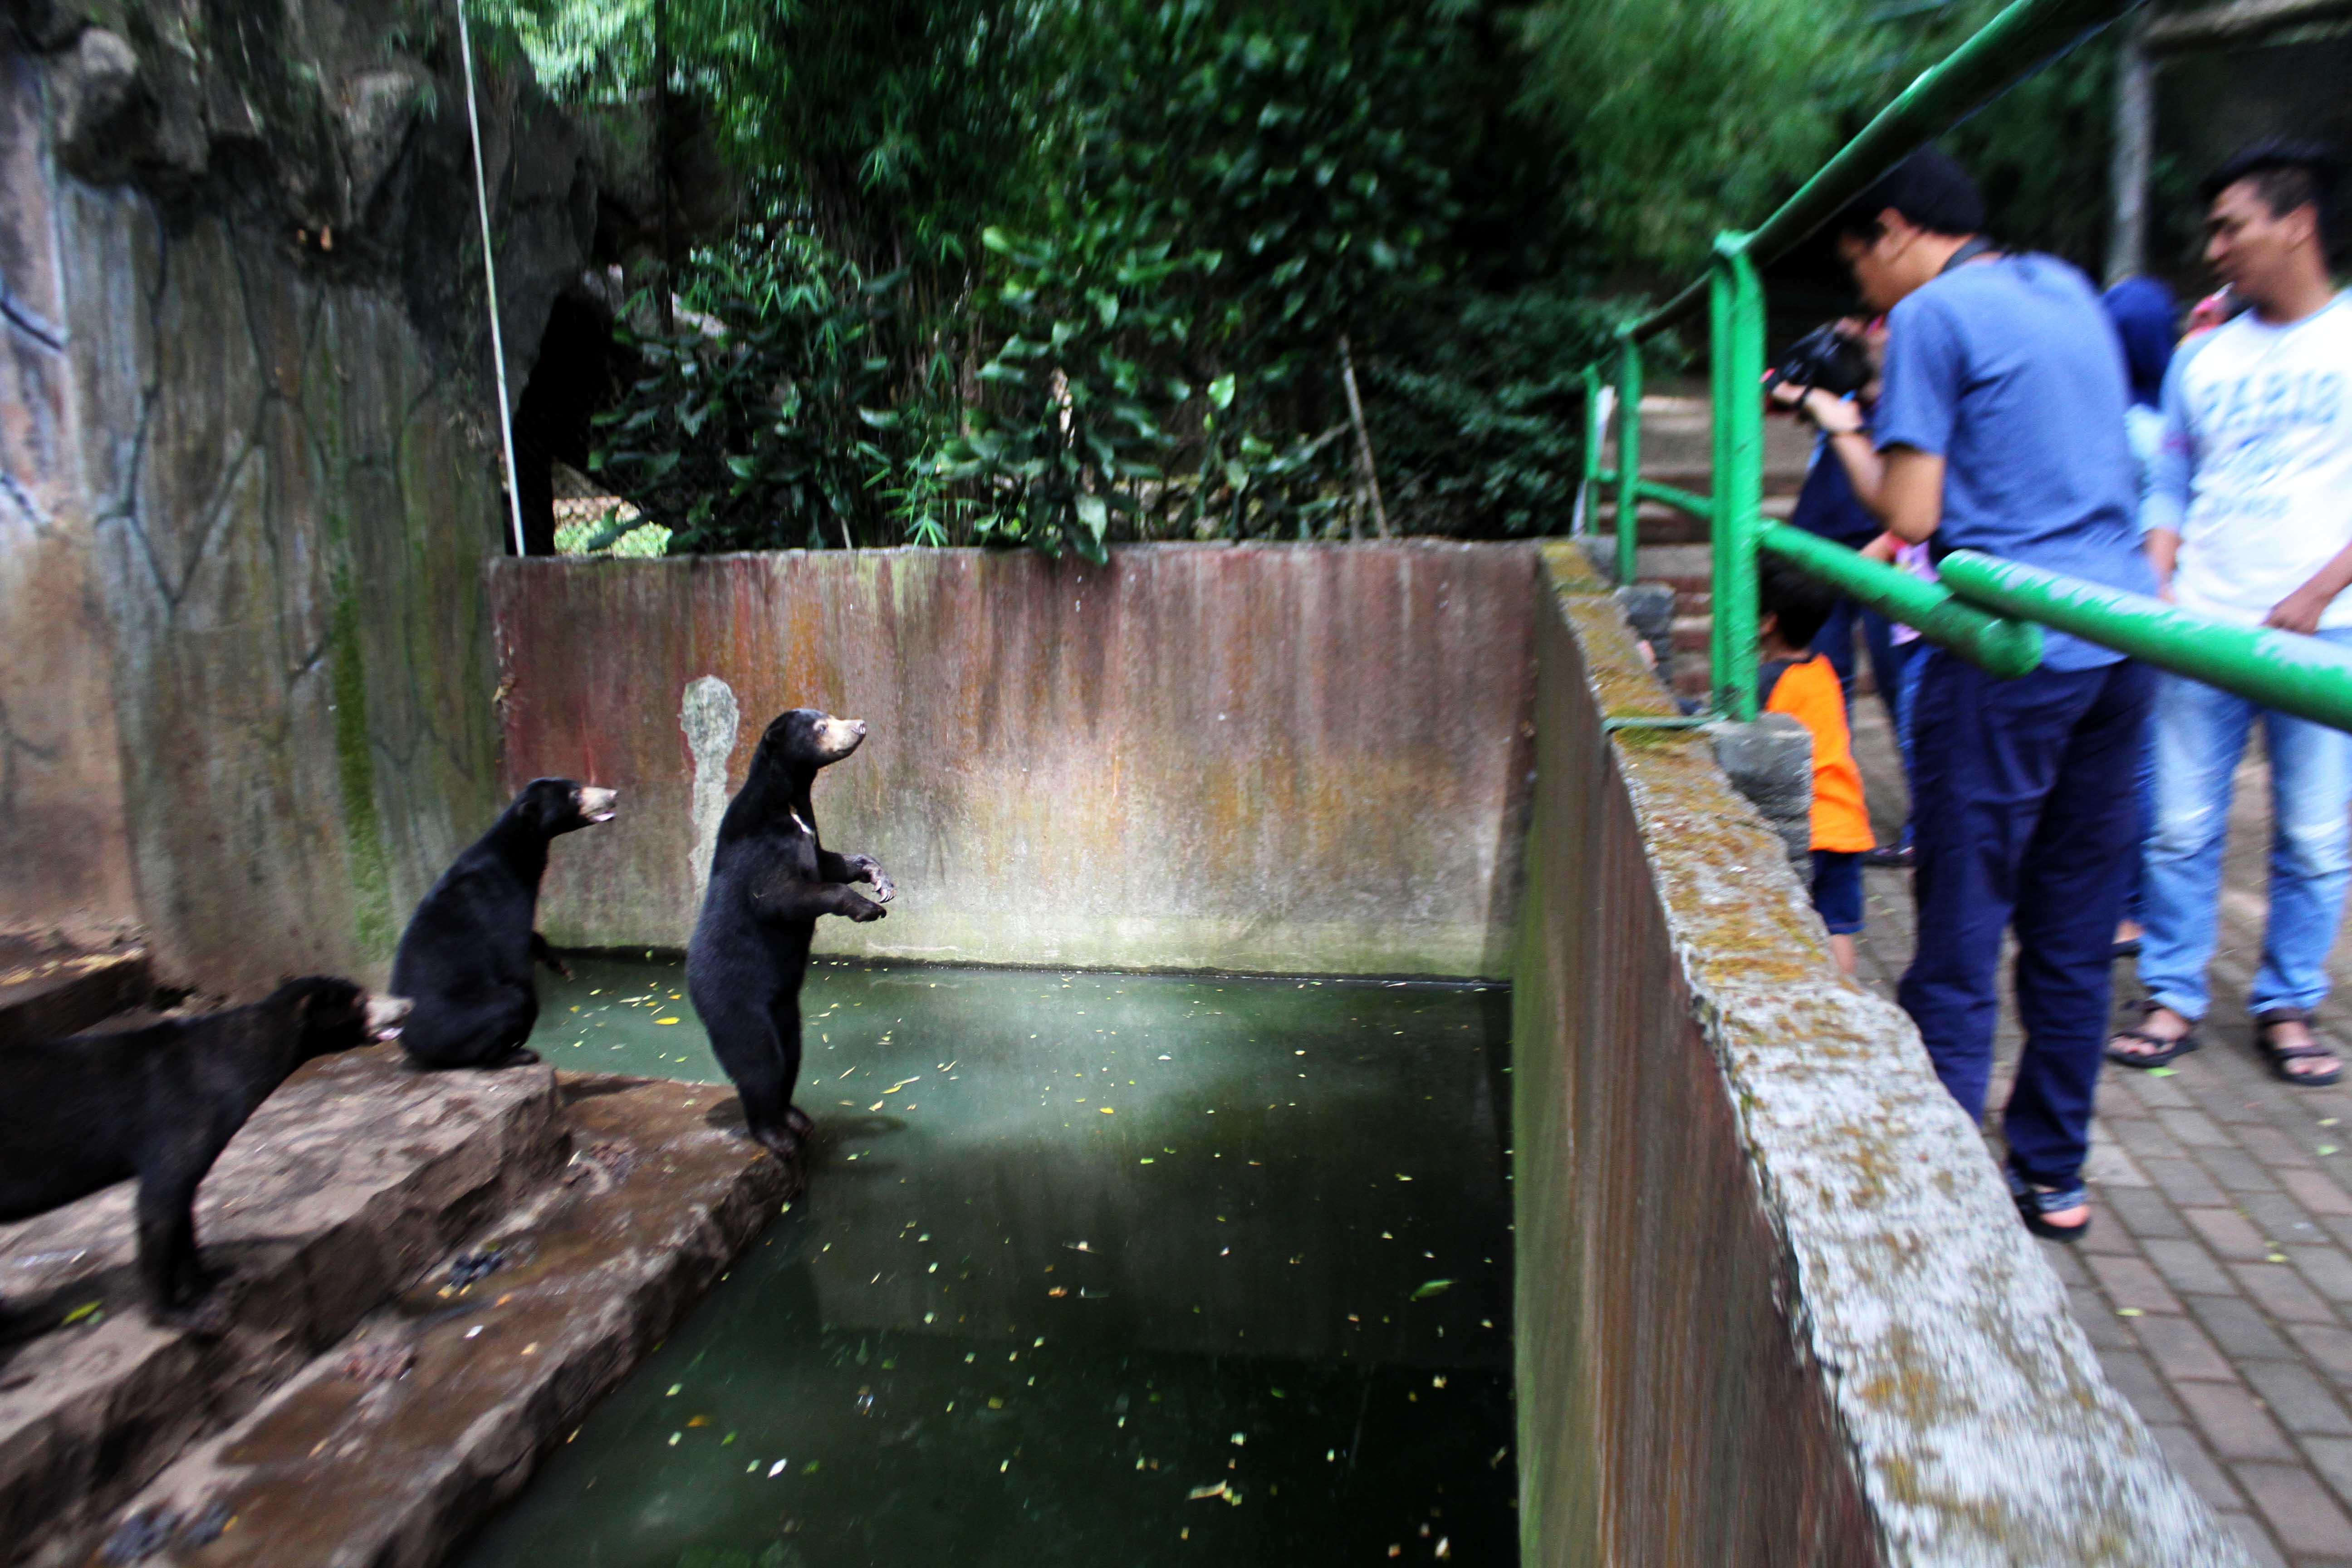 Beruang madu berdiri meminta makanan kepada para pengunjung di Kebun Binatang Bandung, Jalan Tamansari, Kota Bandung, Rabu (18/01/2017). Beruang madu menjadi sorotan setalah diberitakan media asing terkait kondisinya yang kurus. Foto : Donny Iqbal